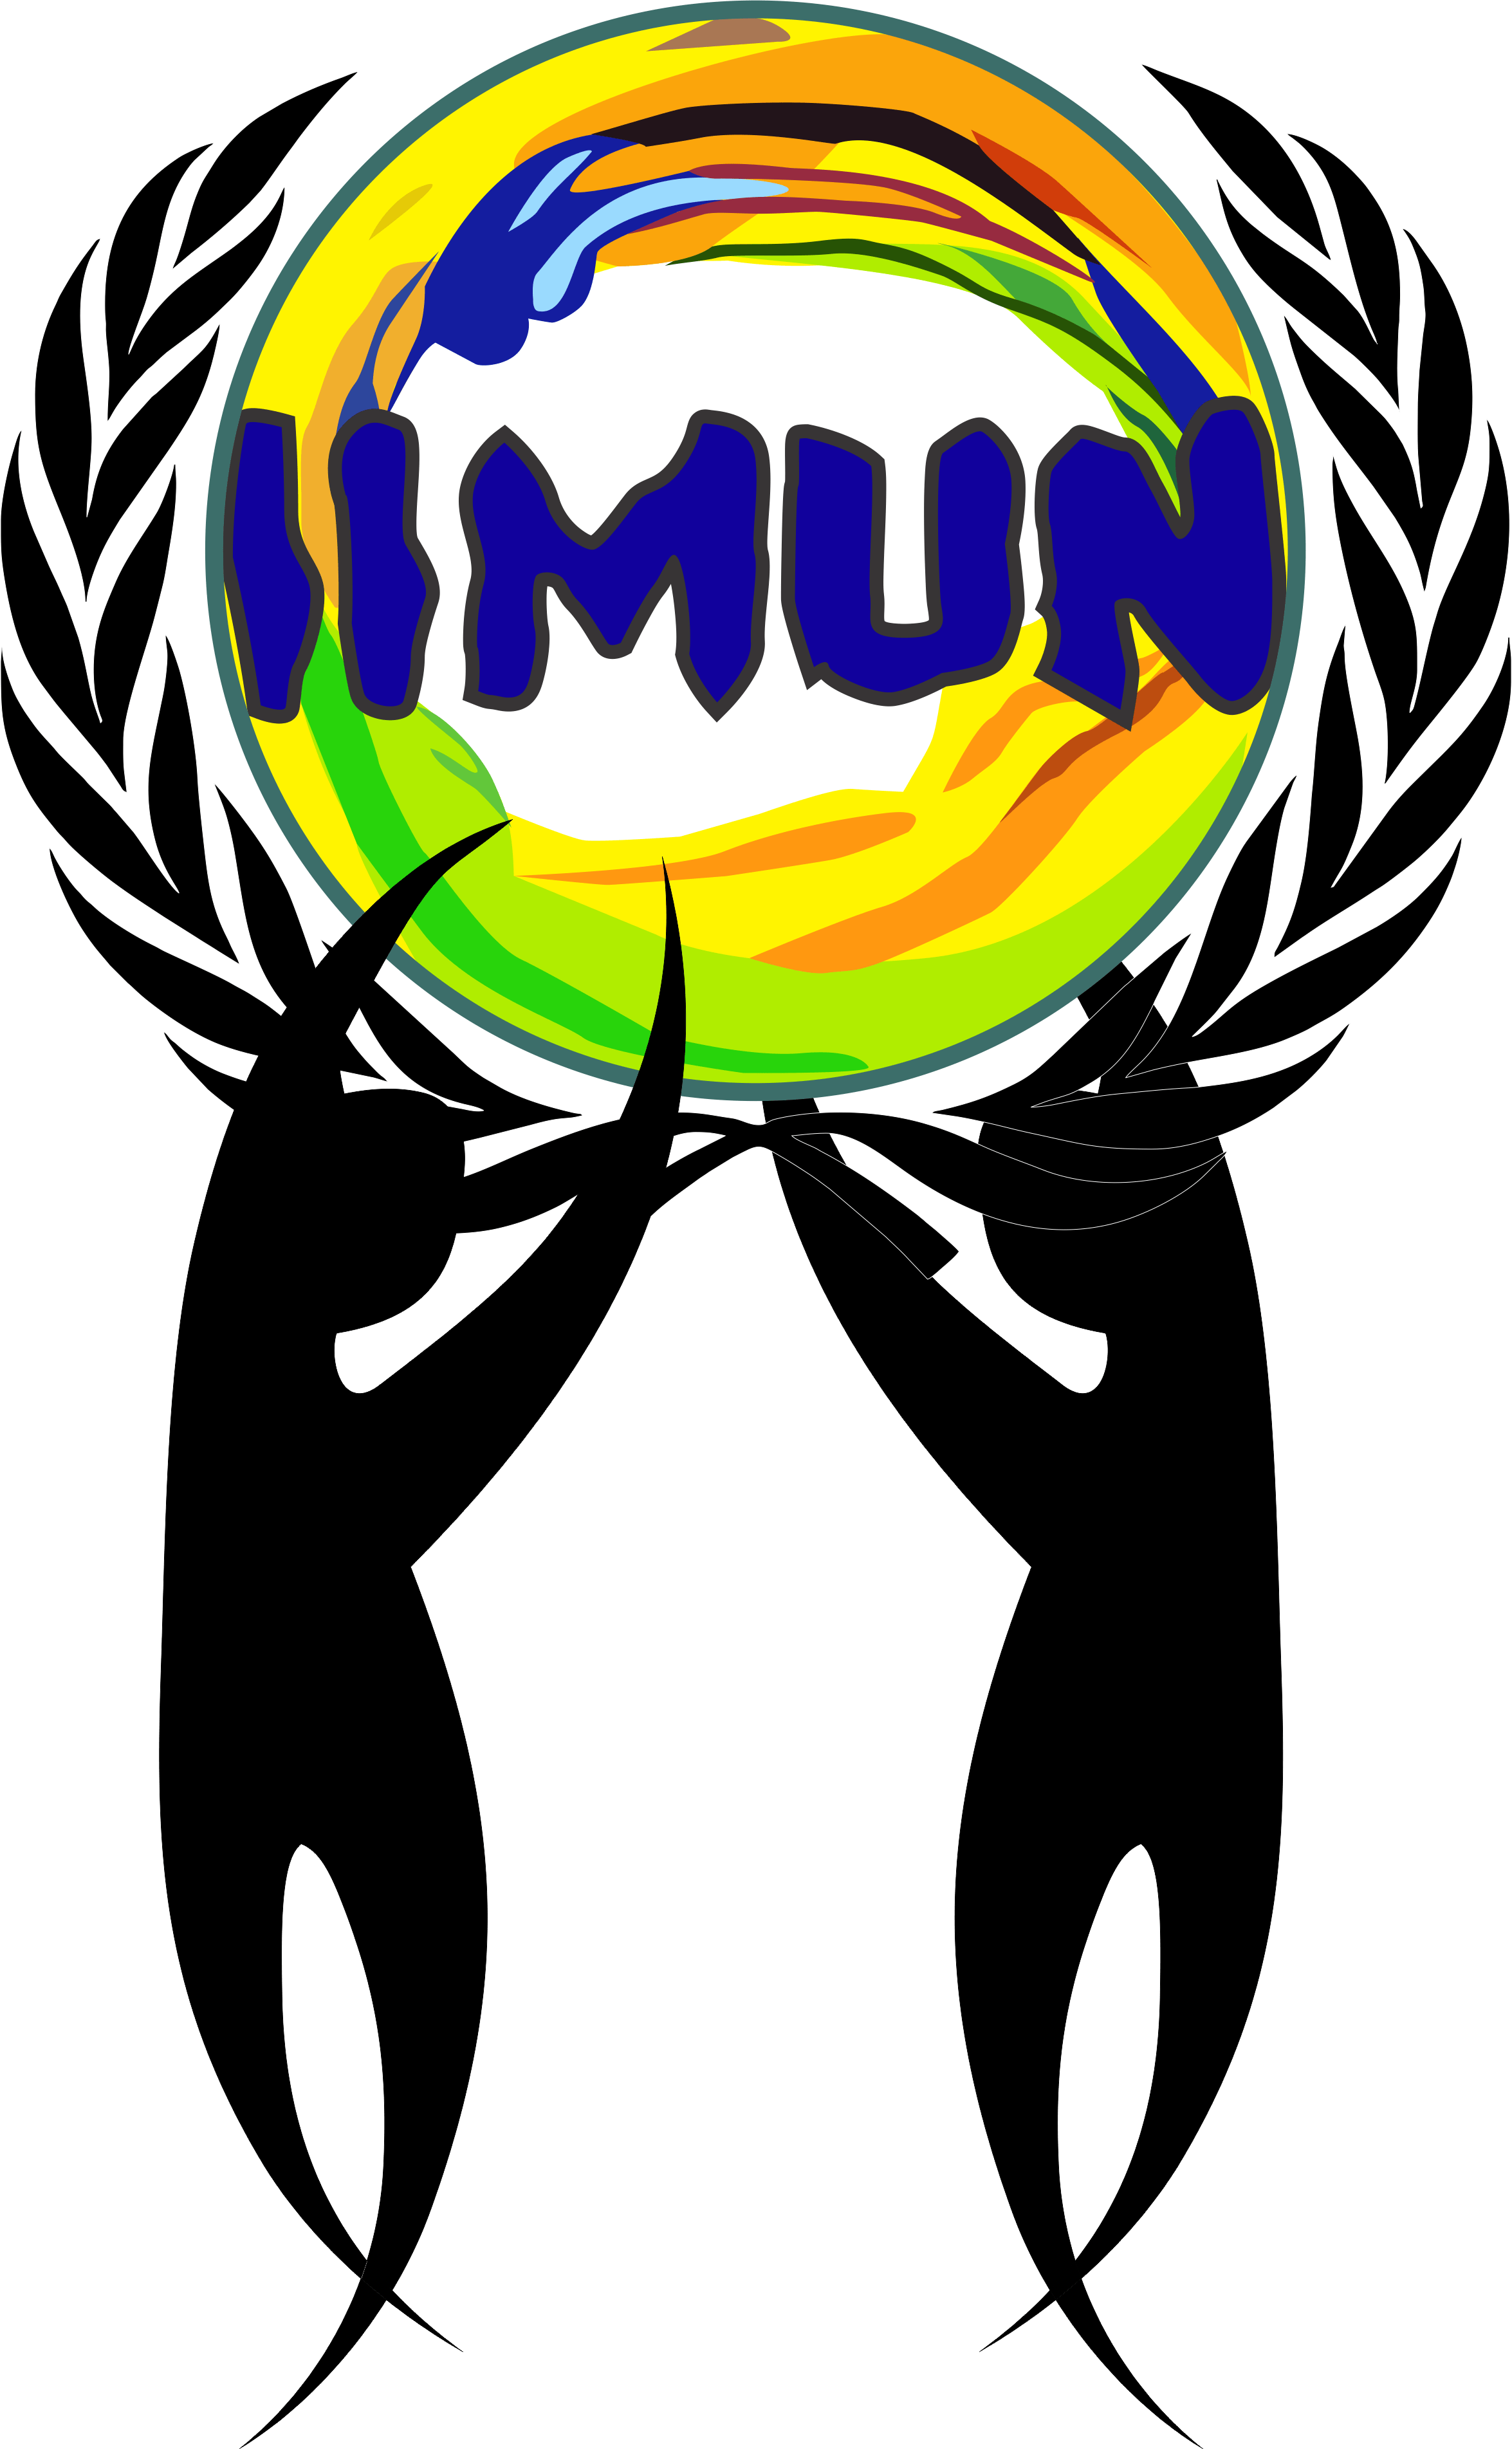 Vmun Logo - Indian International MUN logo.png